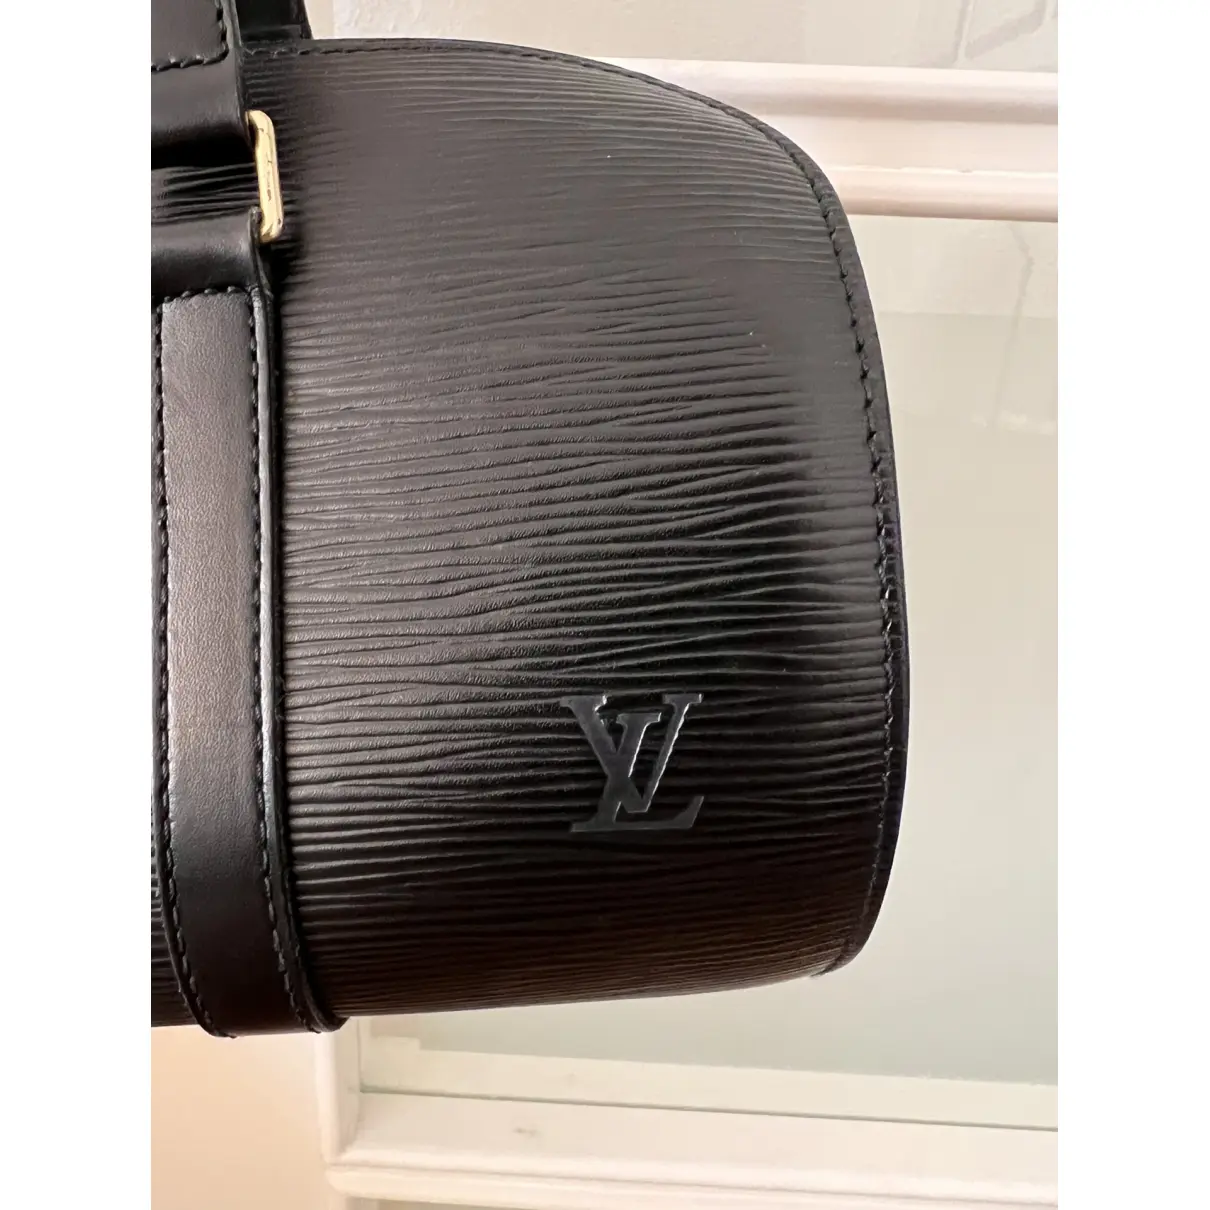 Buy Louis Vuitton Papillon leather handbag online